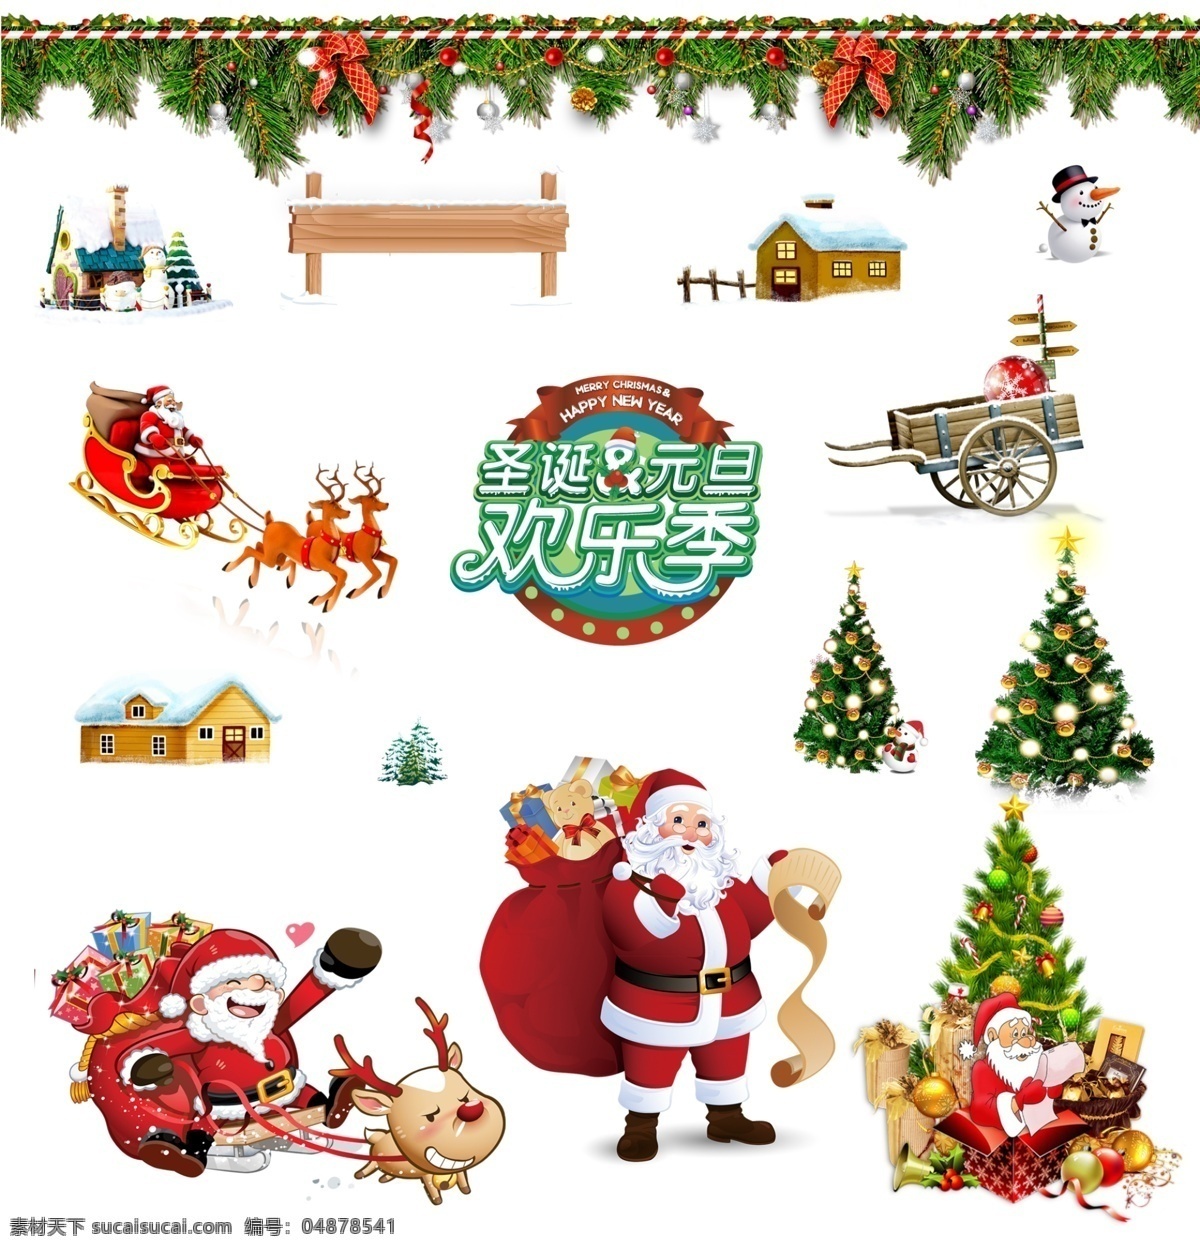 圣诞素材合集 圣诞树 圣诞老人 雪人 房子 雪车 雪橇 麋鹿 节日装饰 节日点缀